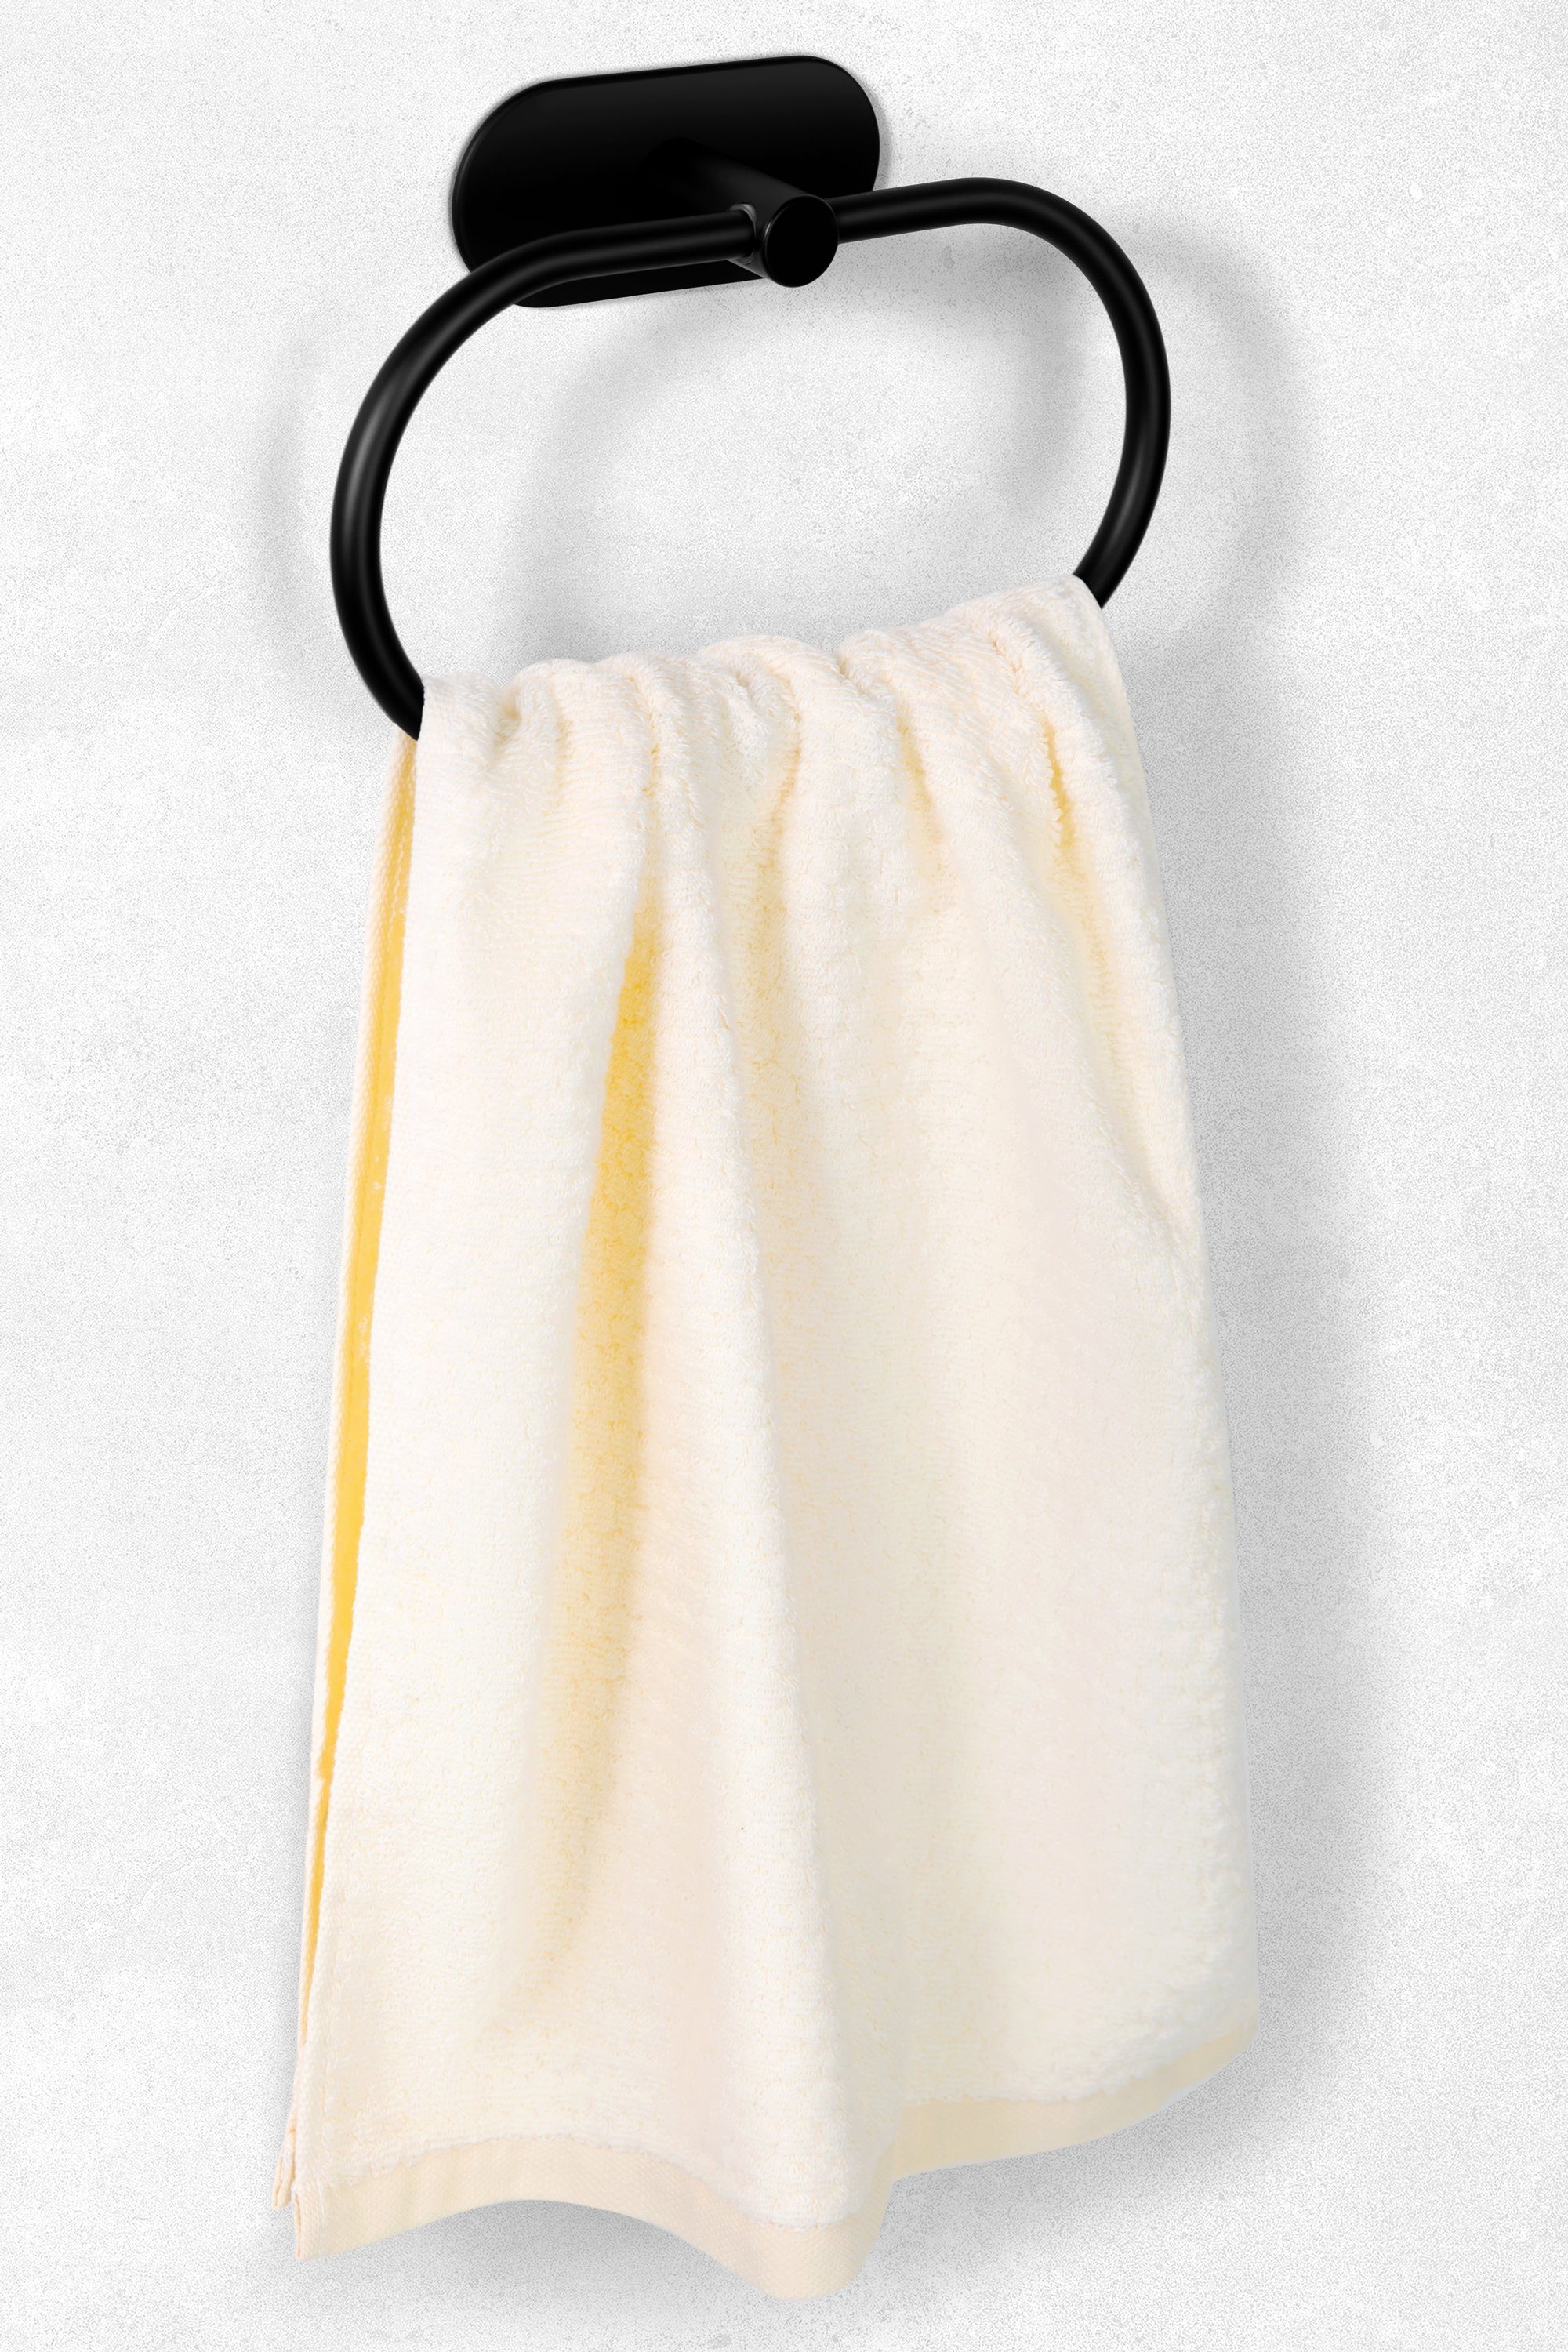 WC Klebend Handtuchhalter Selbstklebender Ambrosya Handtuchhaken Handtuch Montage Schwarz Einfache Handtuchring Bad Halter Edelstahl Haken Klebehaken aus Küche,